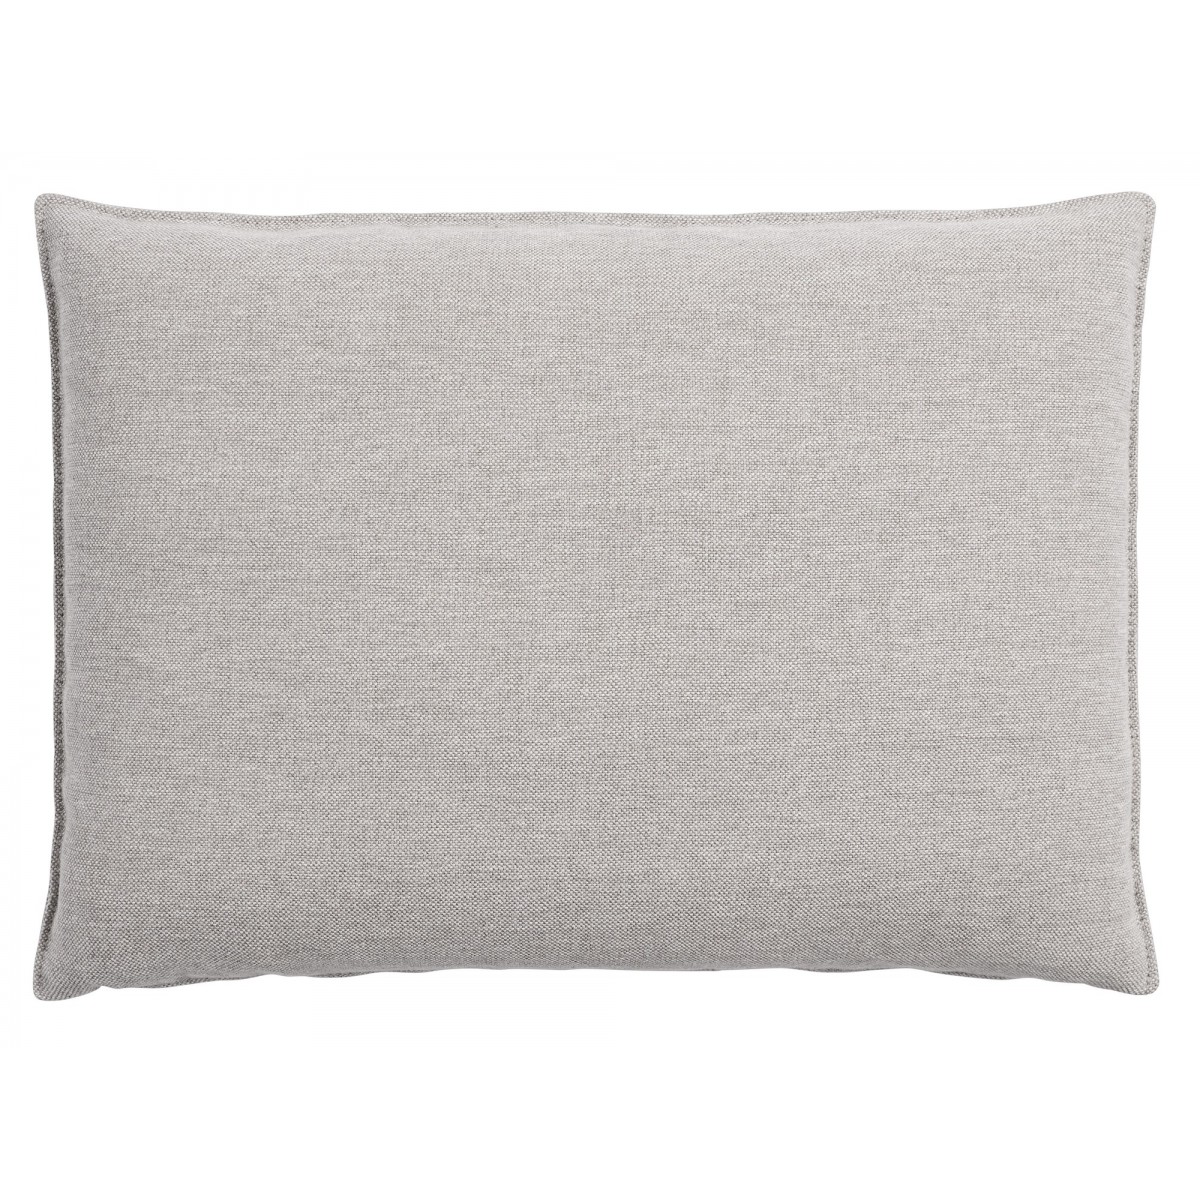 Clay 12 – In Situ cushion – 70 x 50 cm